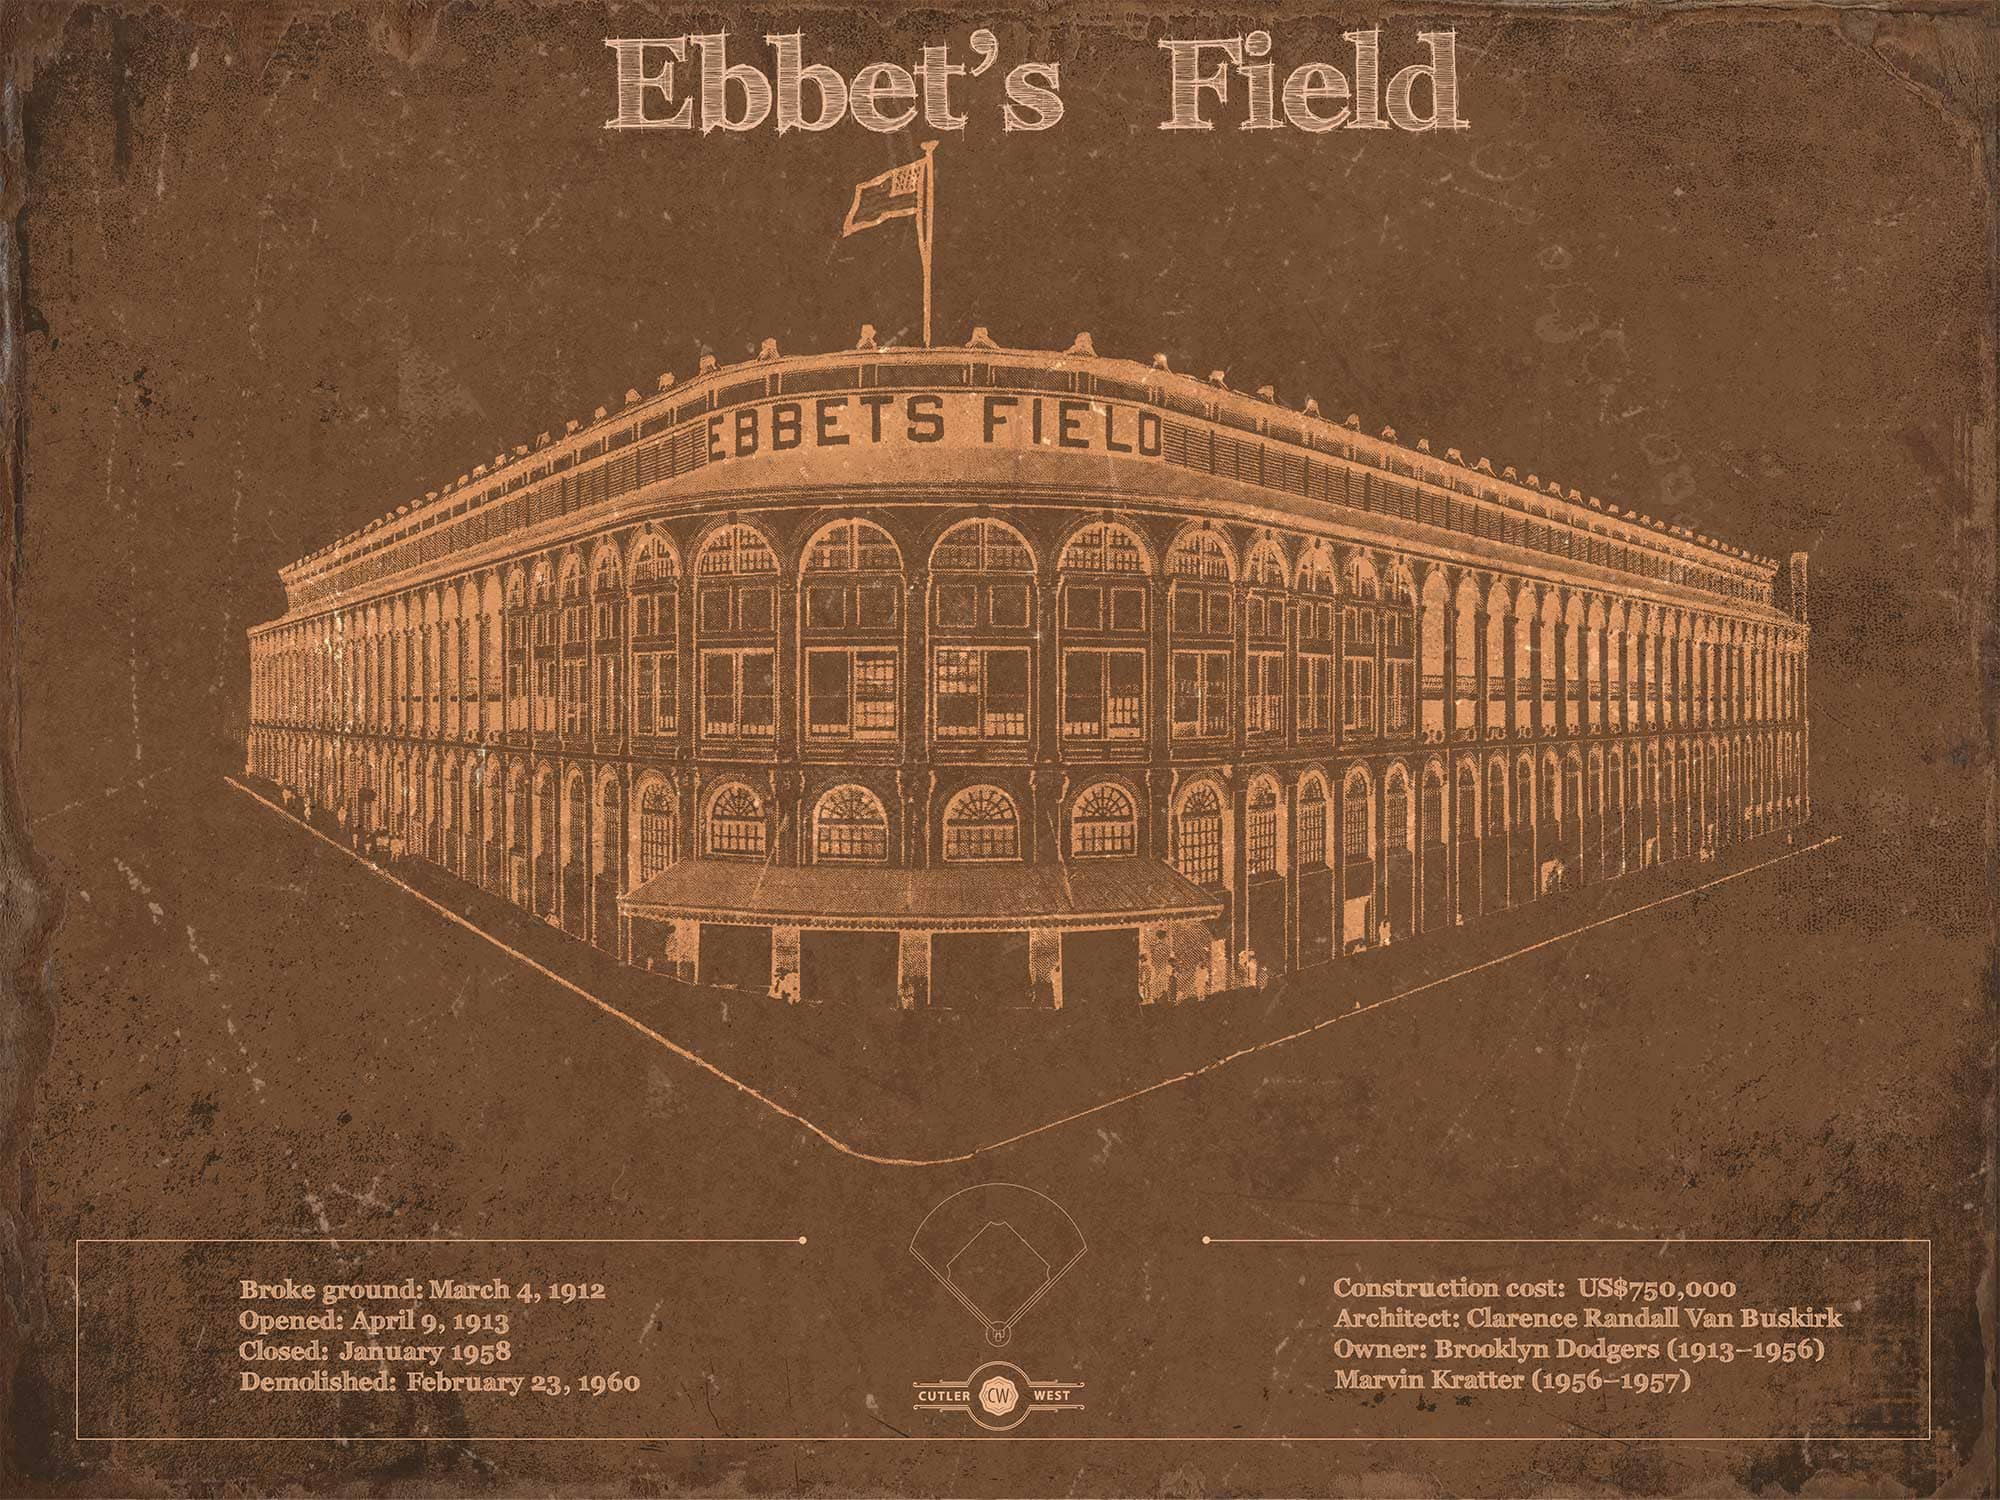 Cutler West Baseball Collection 14" x 11" / Unframed Ebbet's Field - Vintage Brooklyn Dodgers Baseball Art 948212490_60881